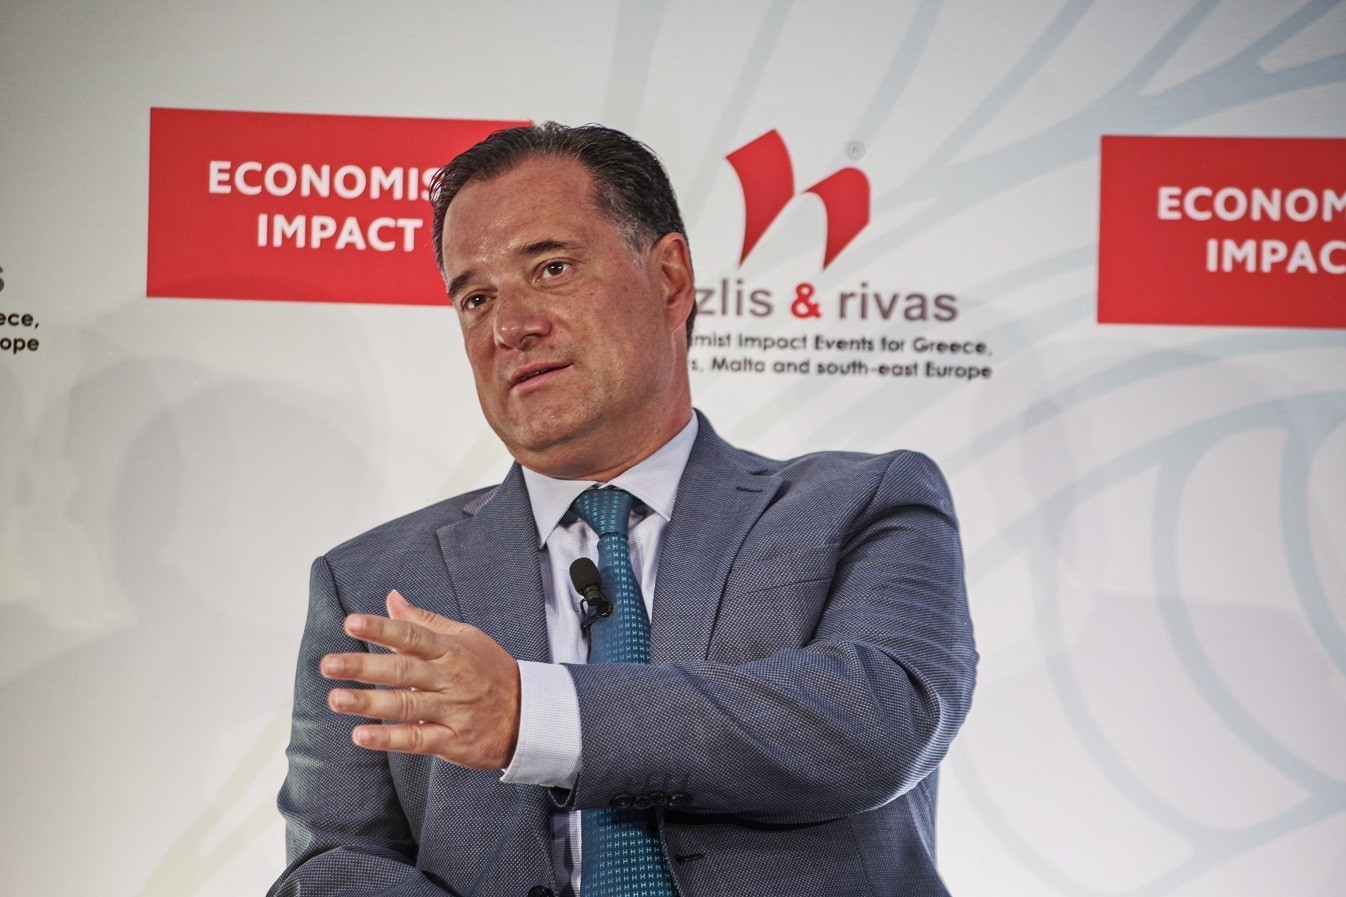 Συνέδριο Economist: Ο Άδωνις Γεωργιάδης προανήγγειλε σημαντικές επενδύσεις στην Ελλάδα